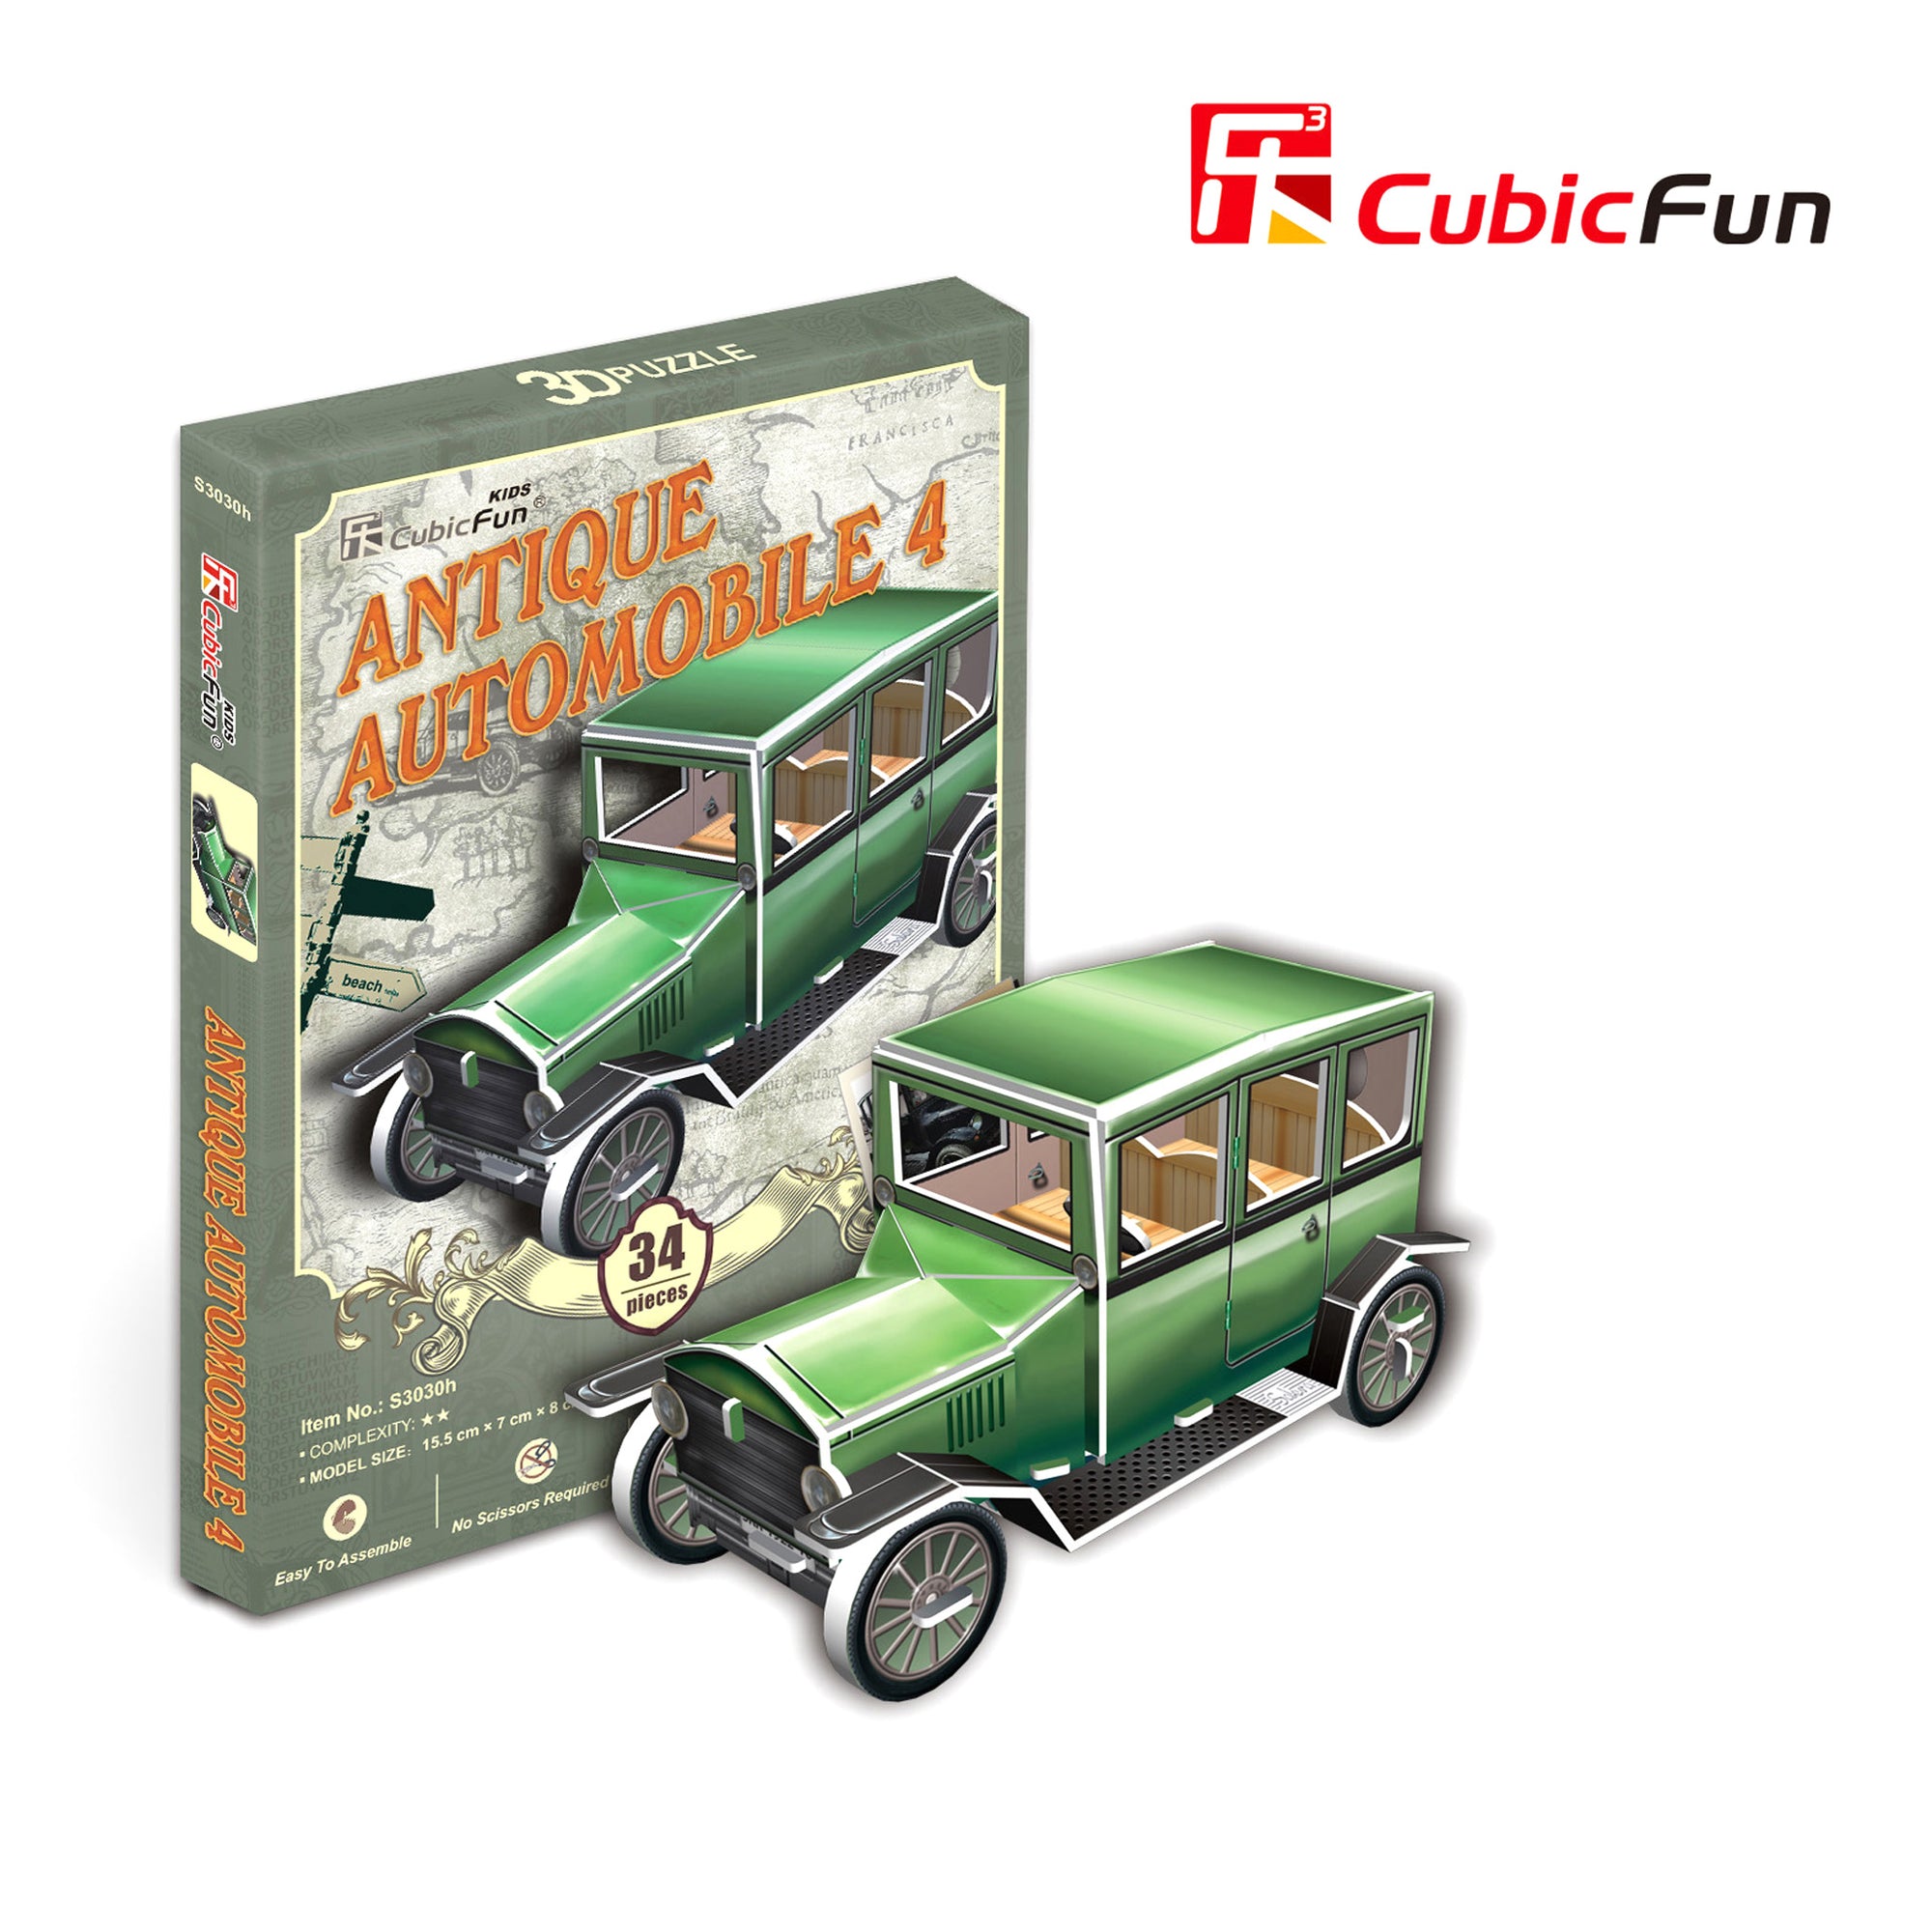 Antique Automobile 4, 32 pcs 3d Puzzle